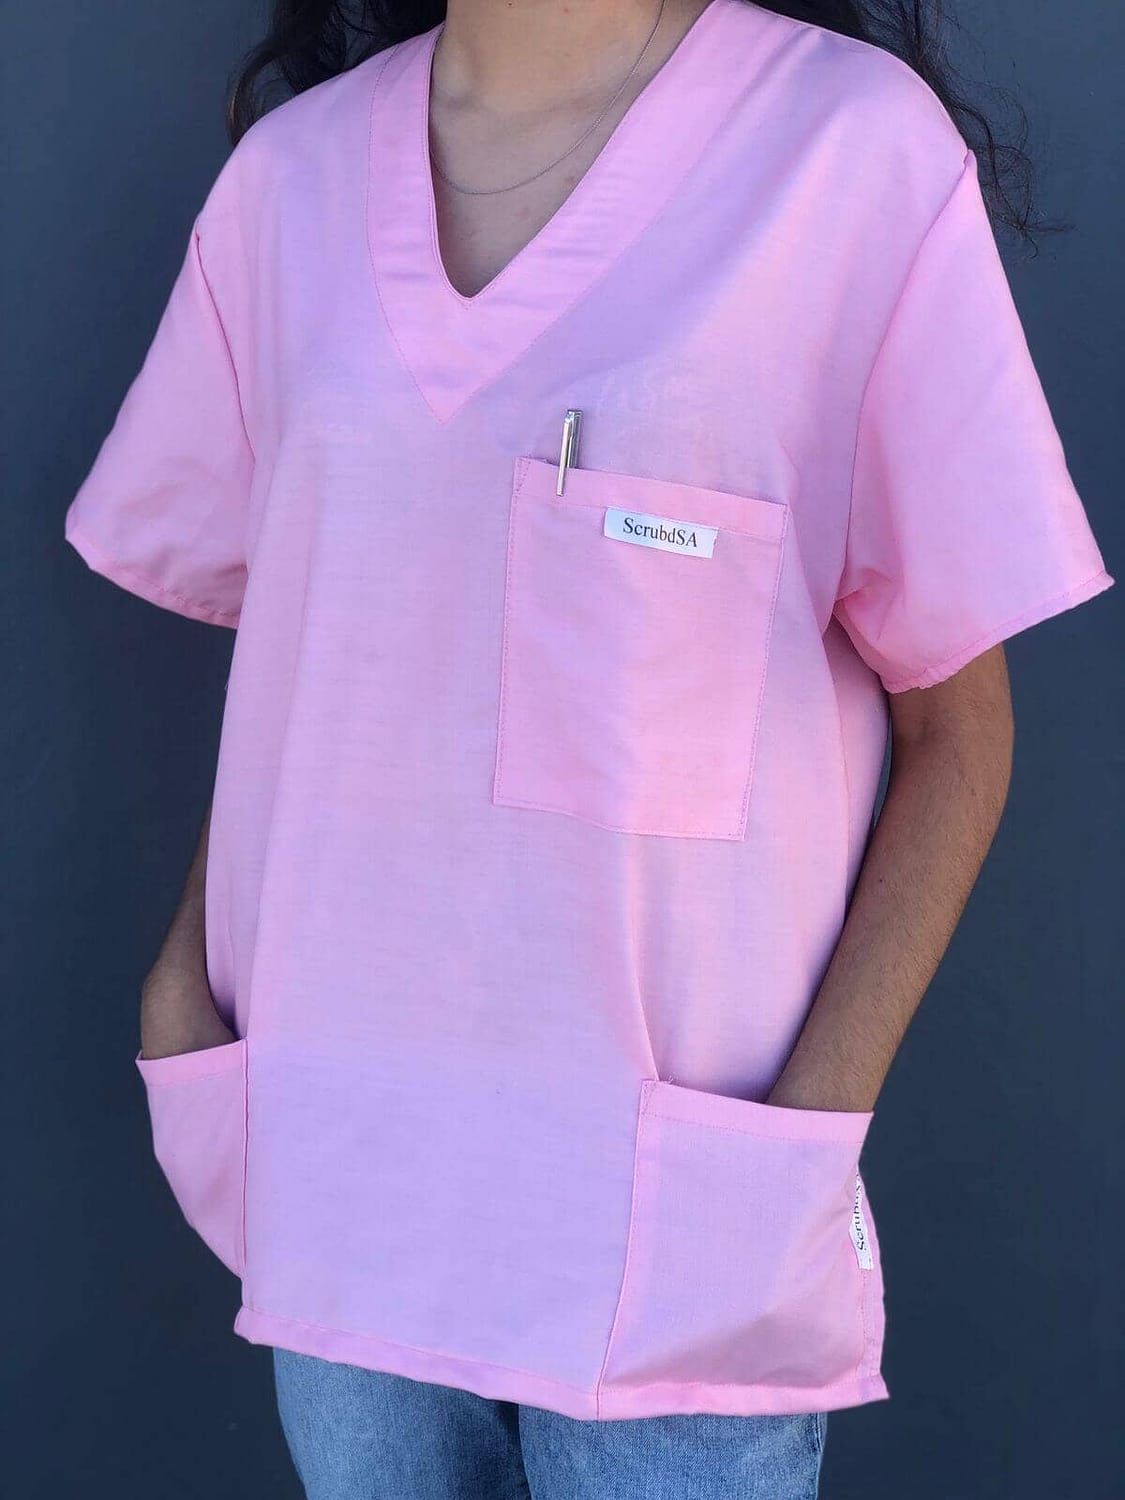 Medical scrubs for sale - Bubblegum Pink SIDE